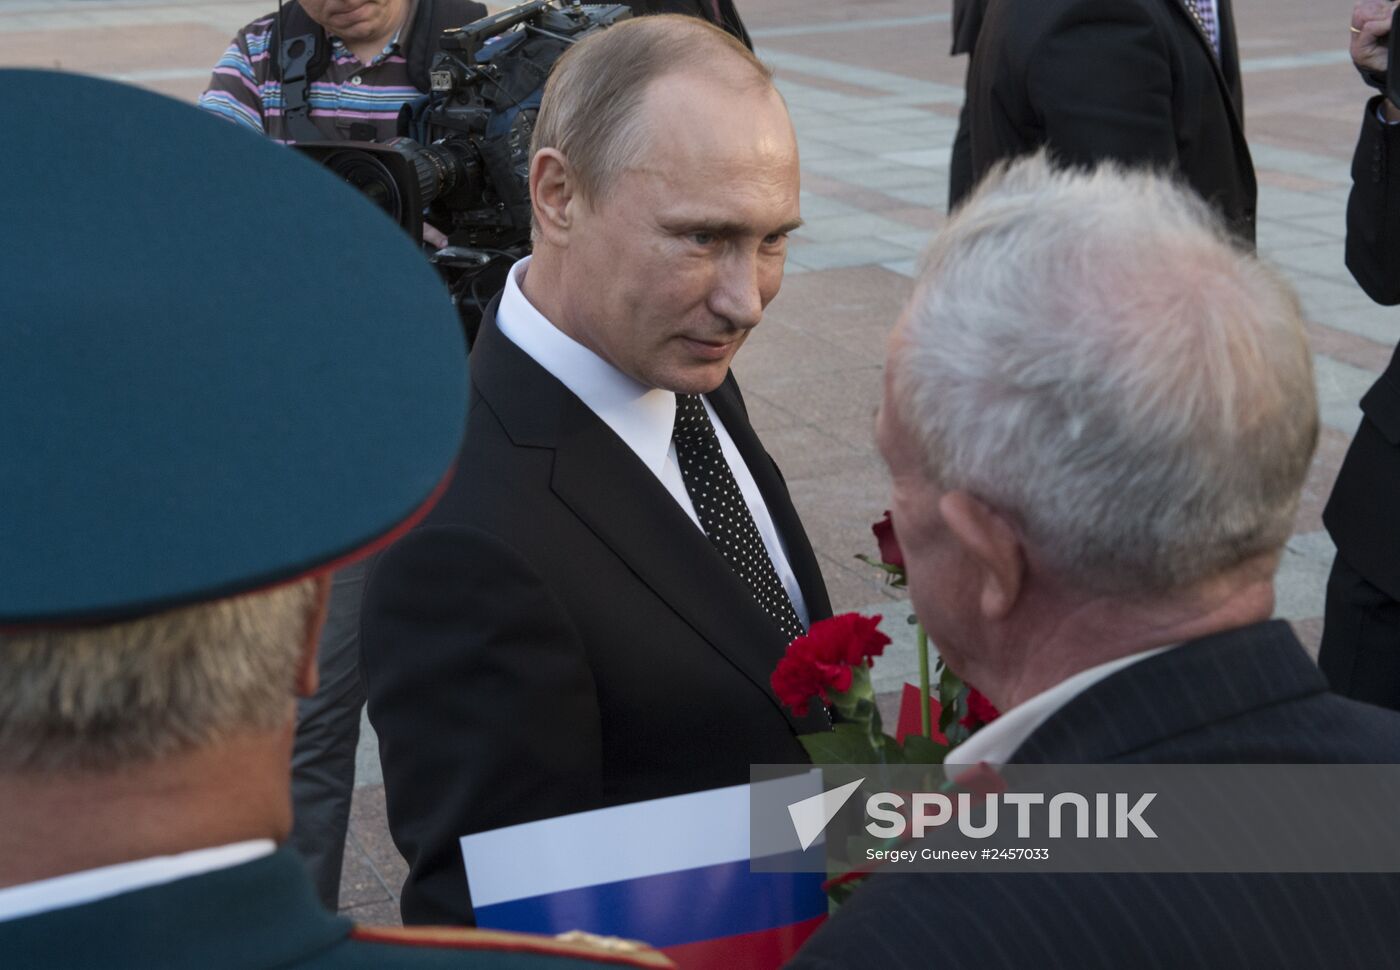 Vladimir Putin's visit to Belarus